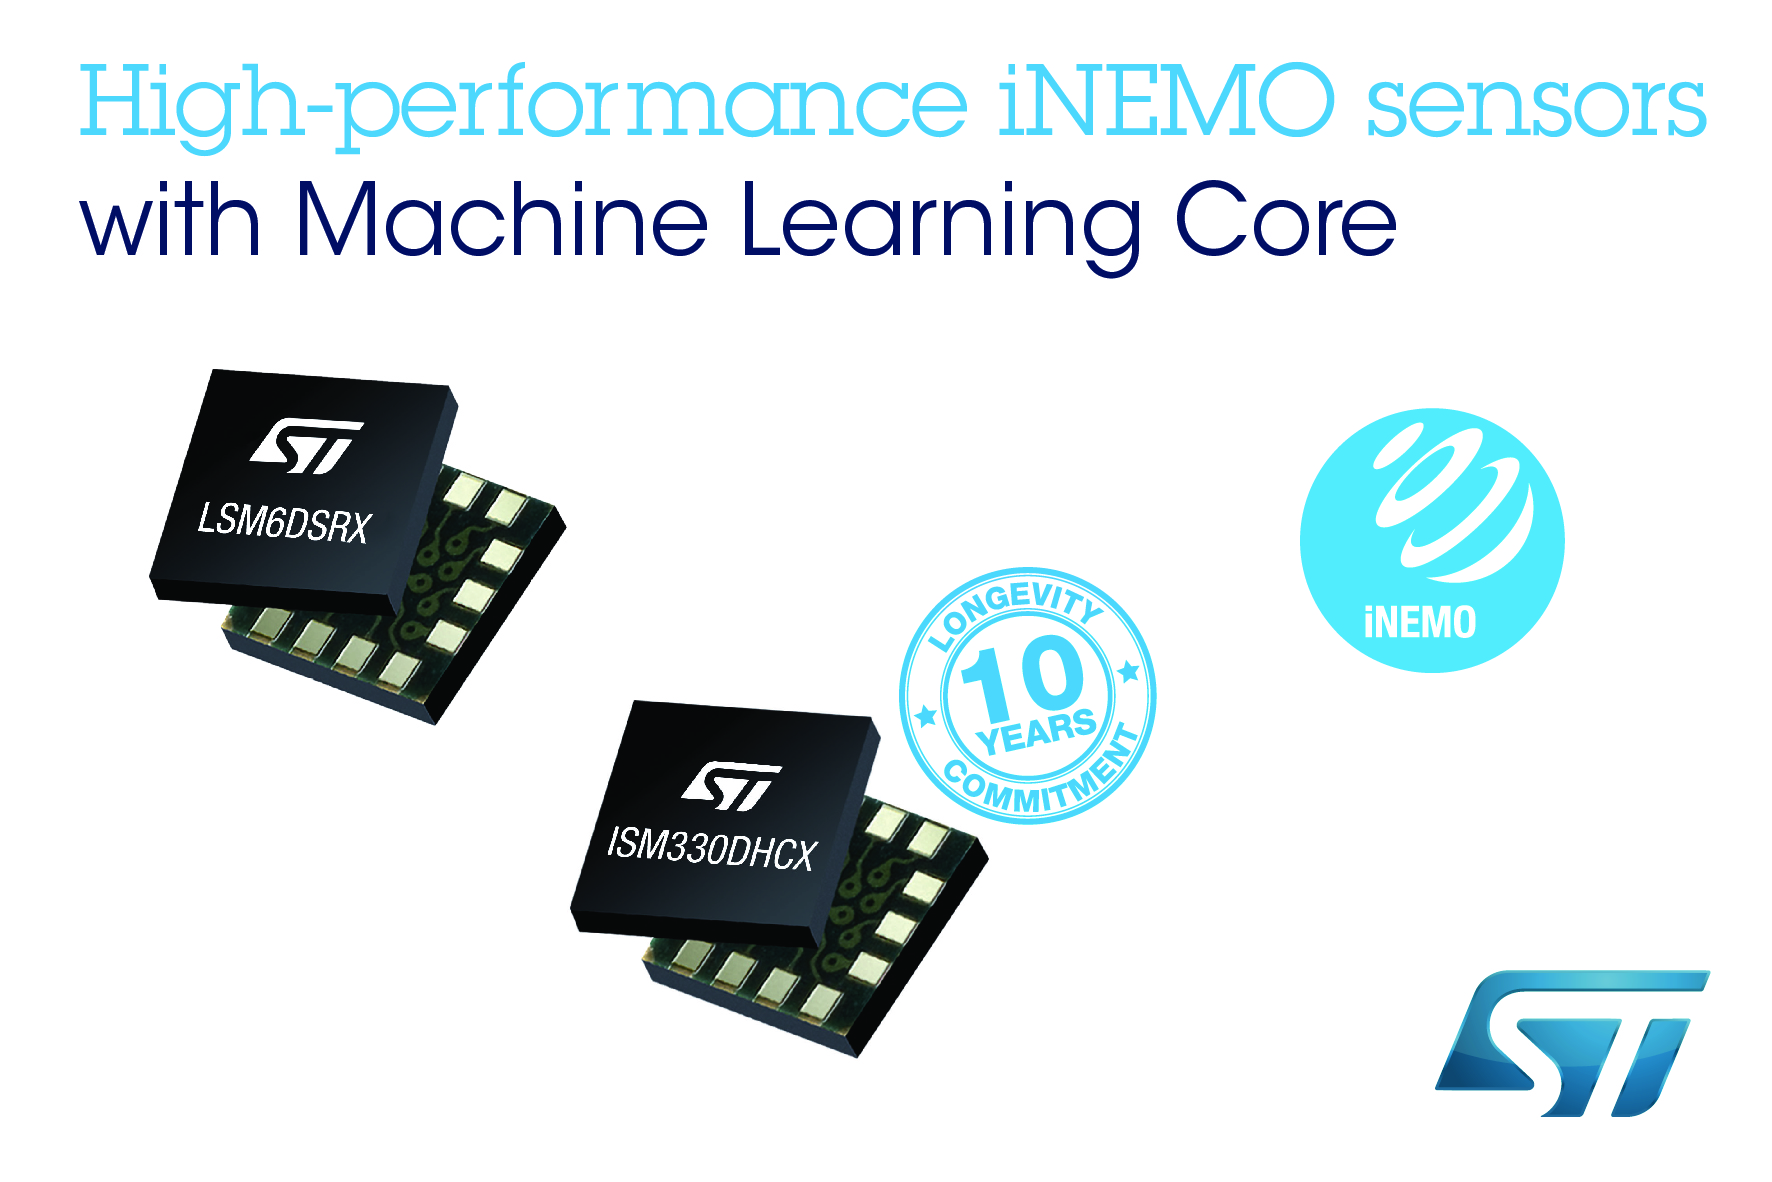 意法半导体推出高级iNEMO传感器，为工业和消费应用增添机器学习内核的能效优势